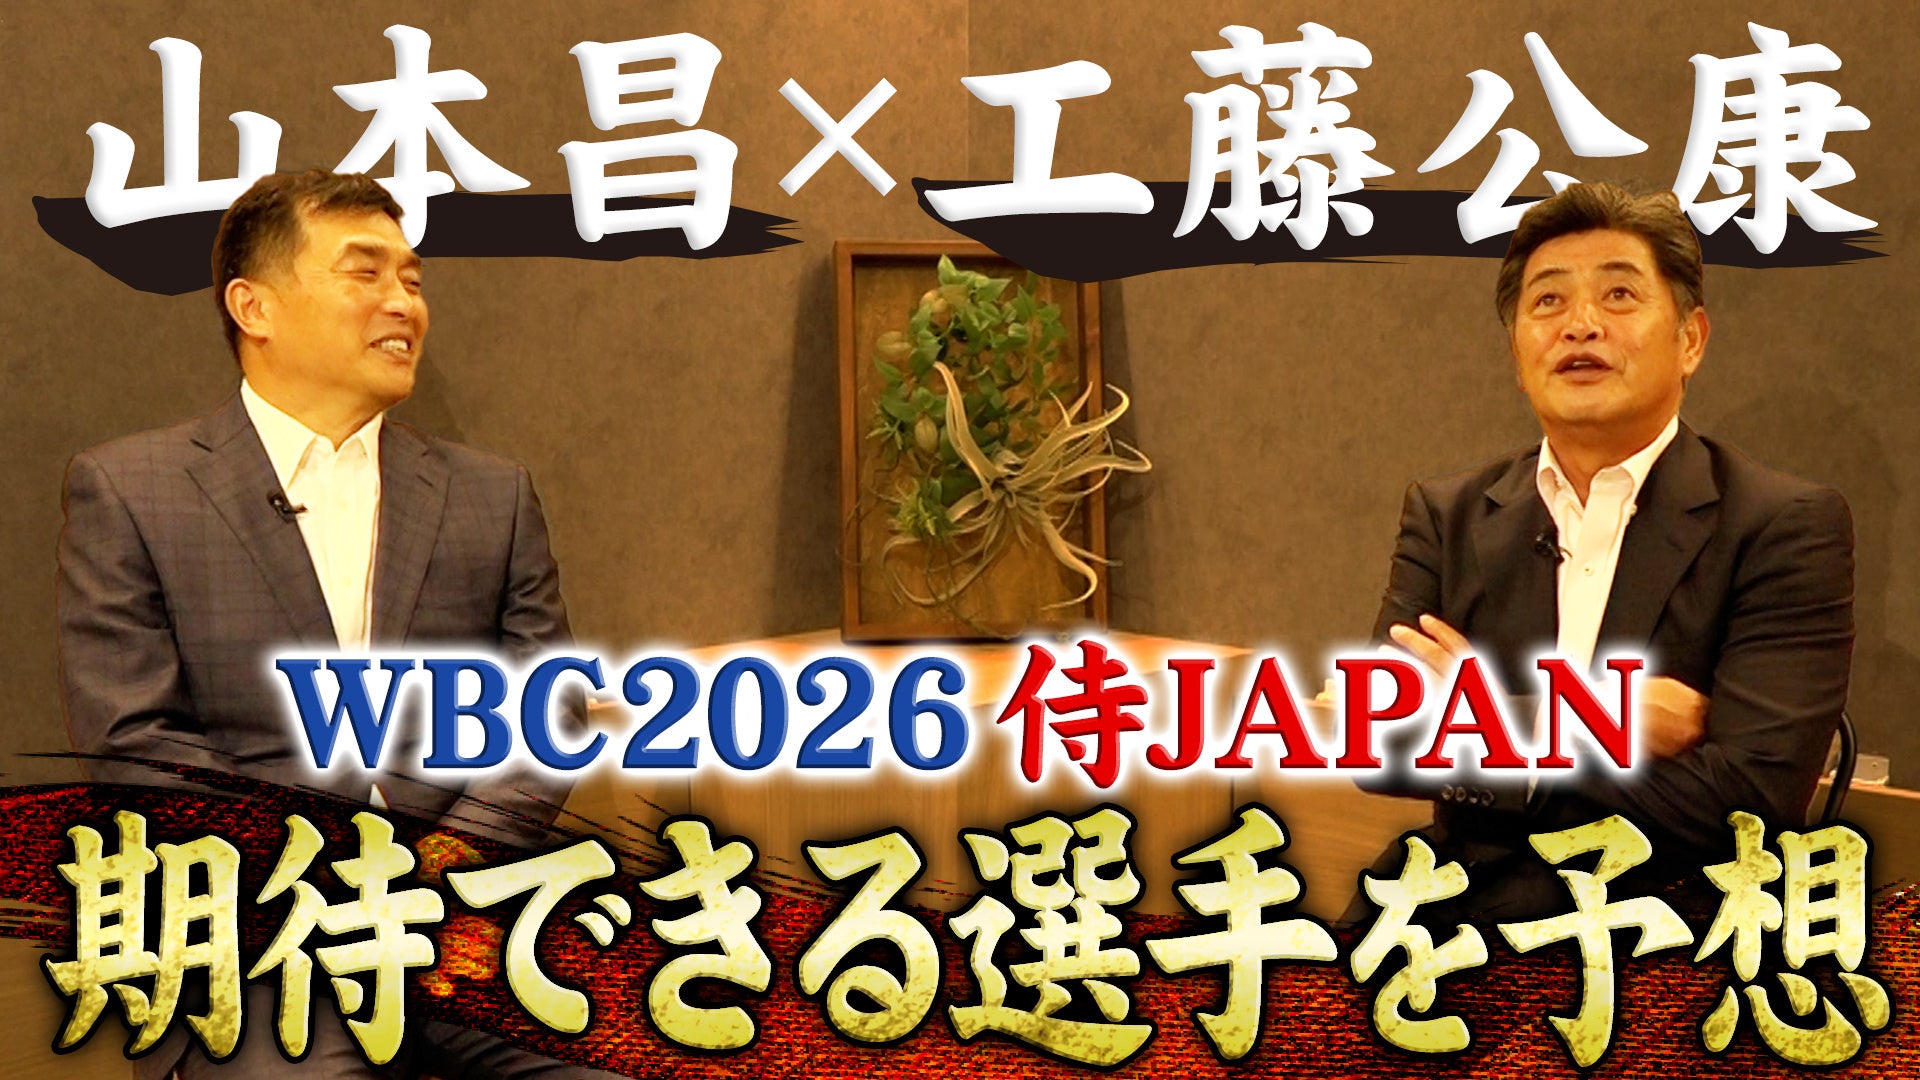 山本 昌さんと工藤 公康さんの日本プロ野球名球会コンビがYouTube番組で対談！9月11日放送予定